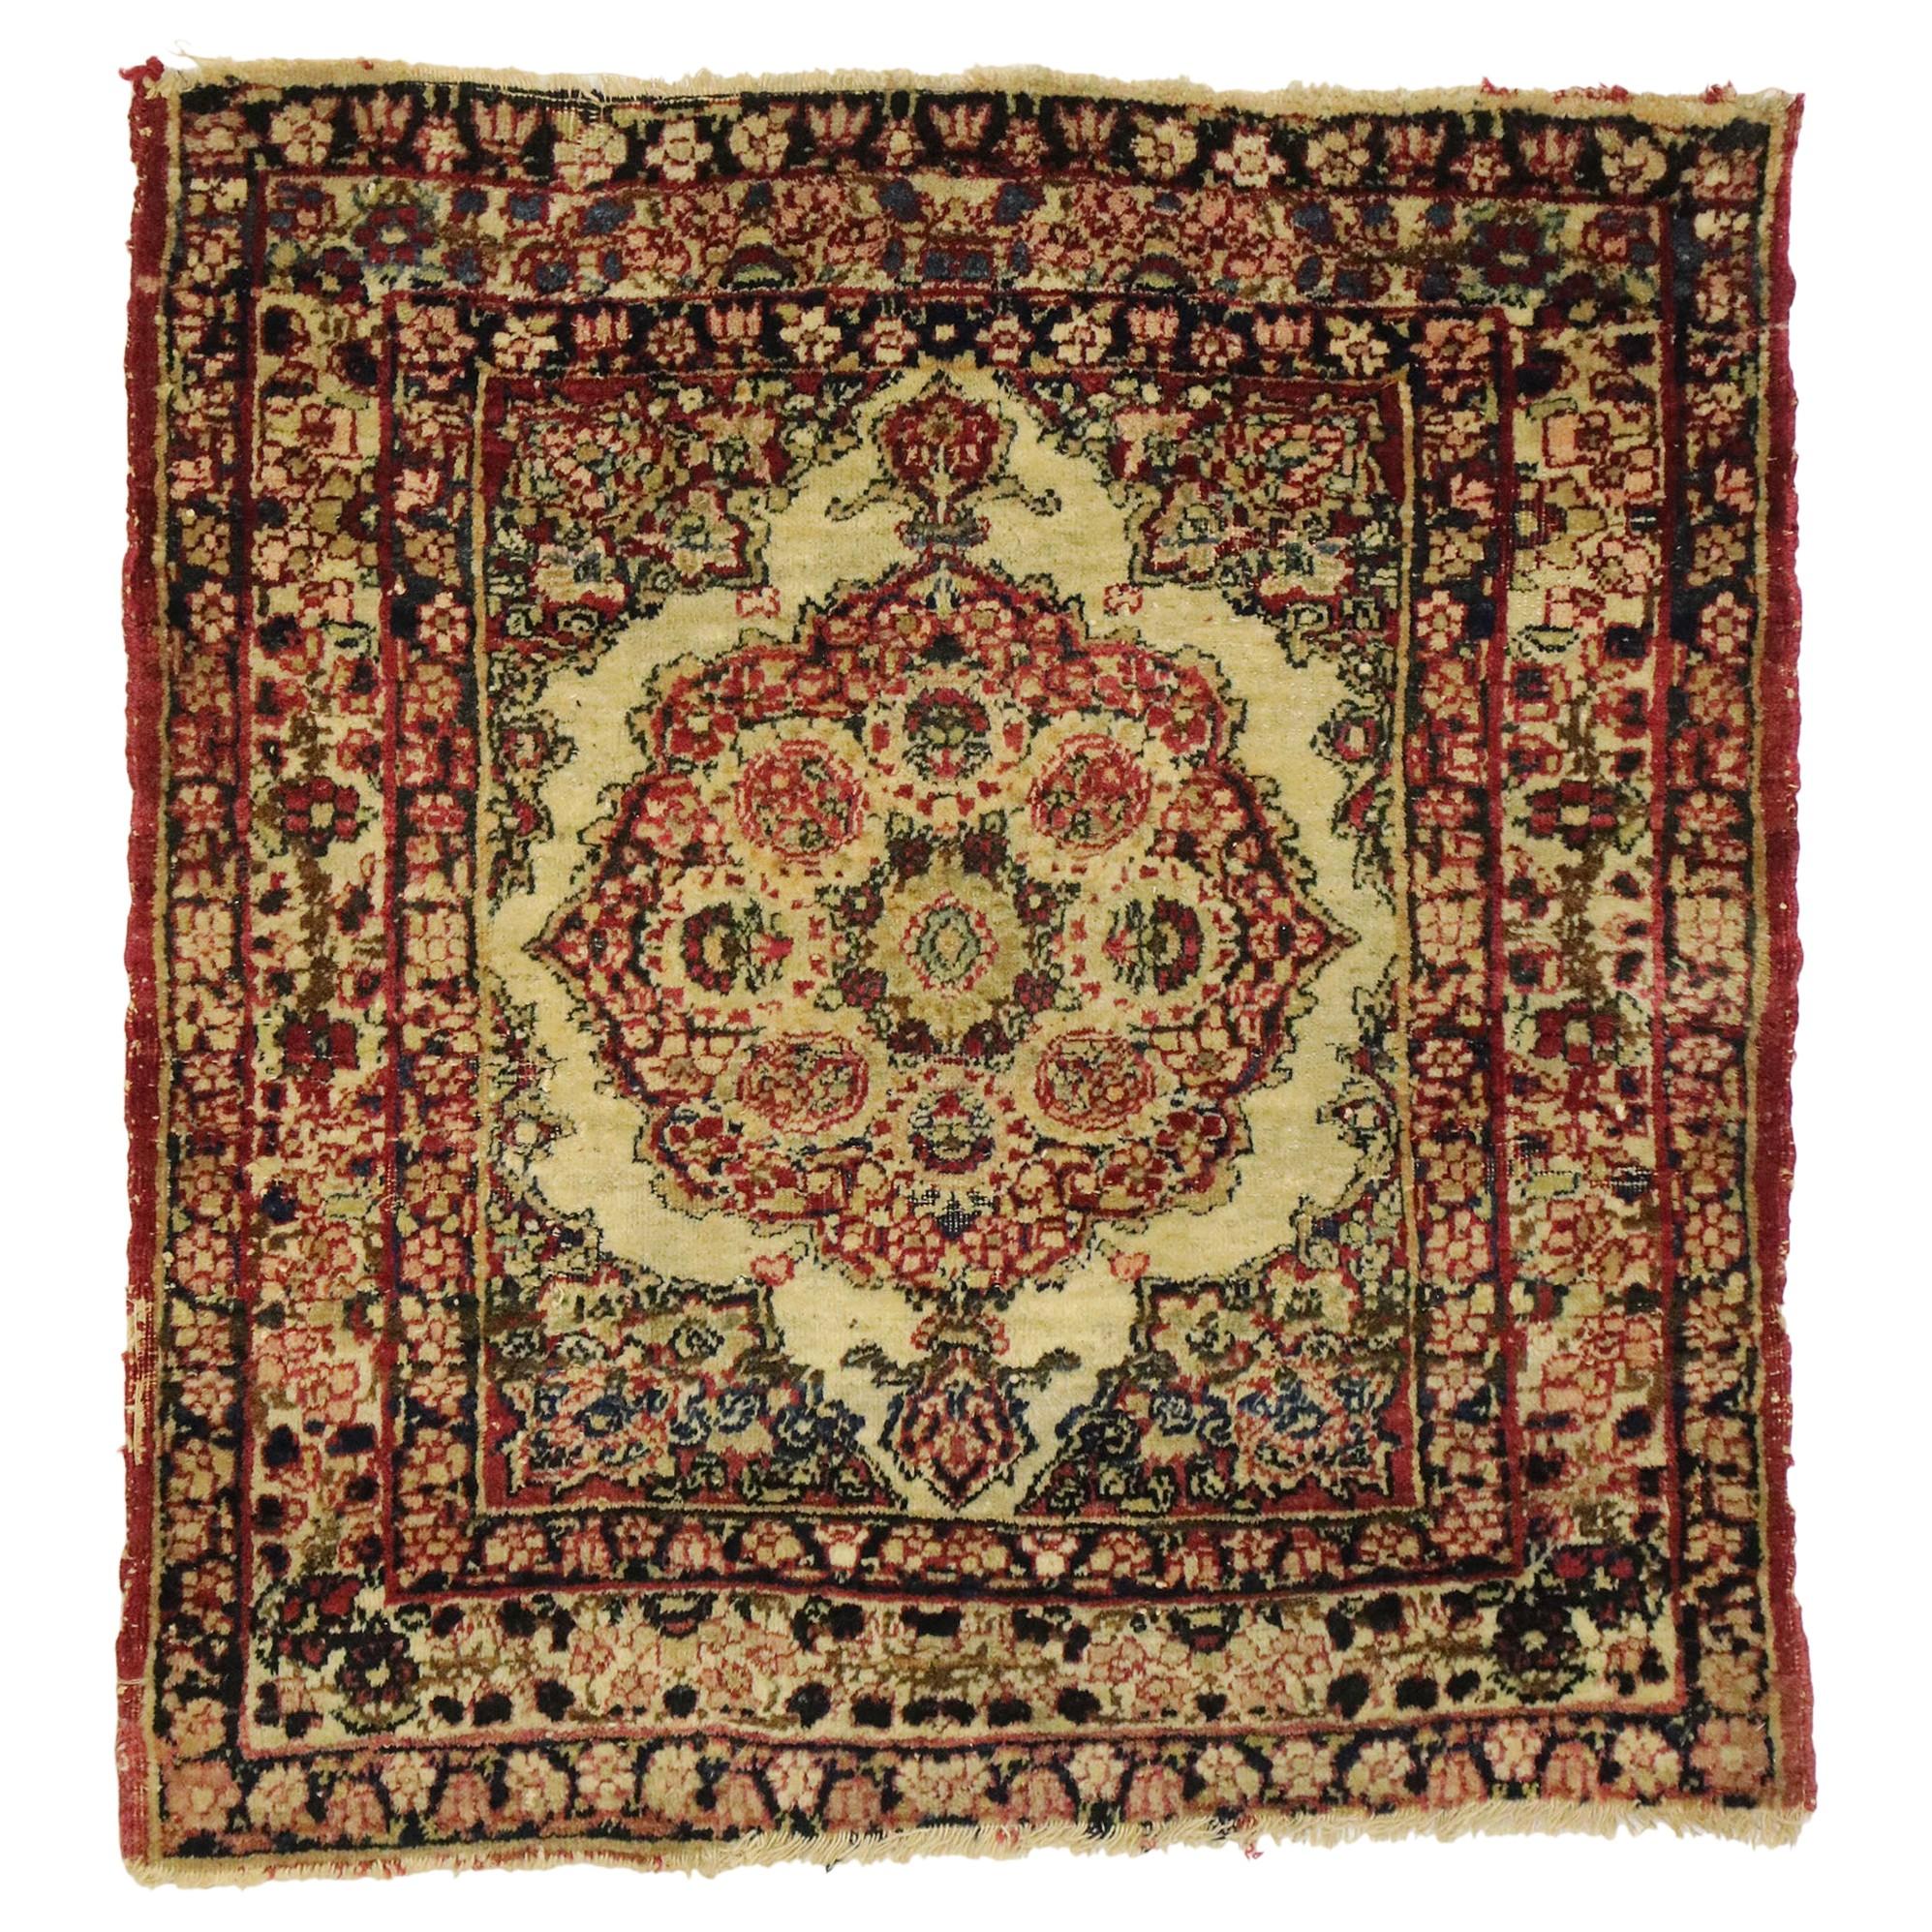 Antique tapis persan Kermanshah avec style victorien du vieux monde